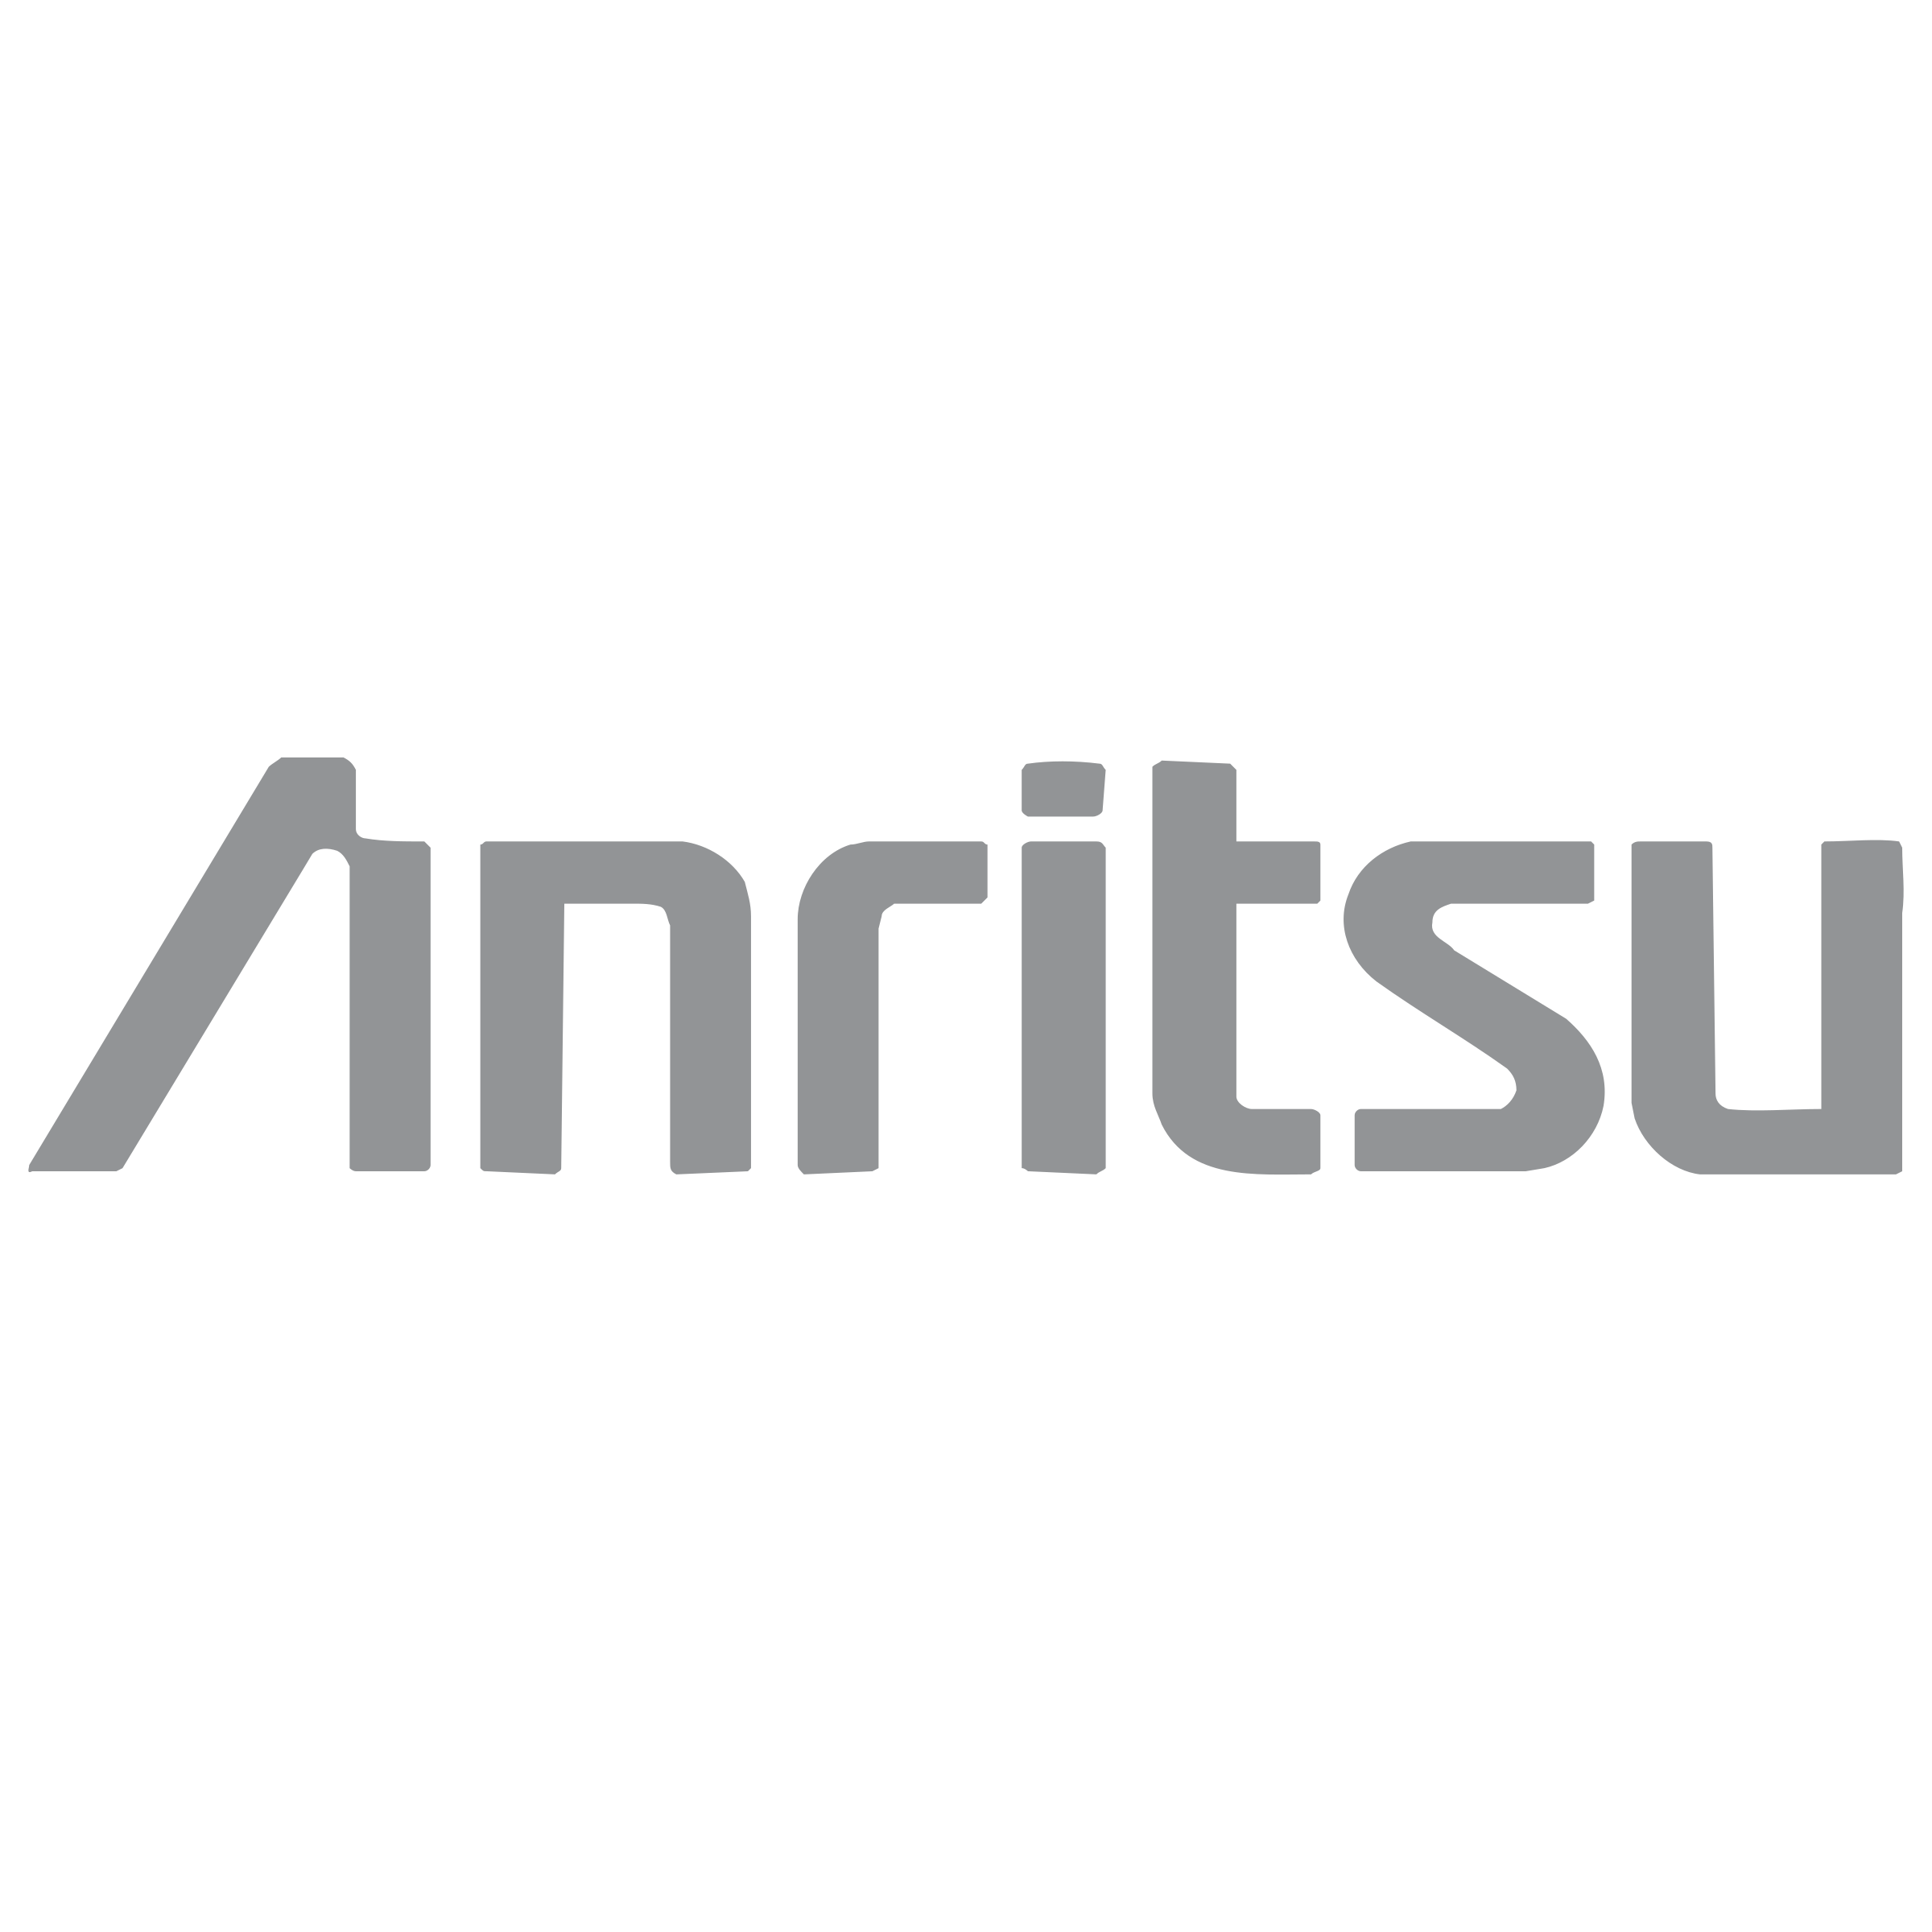 Anritsu Logo - Anritsu Logo PNG Transparent & SVG Vector - Freebie Supply